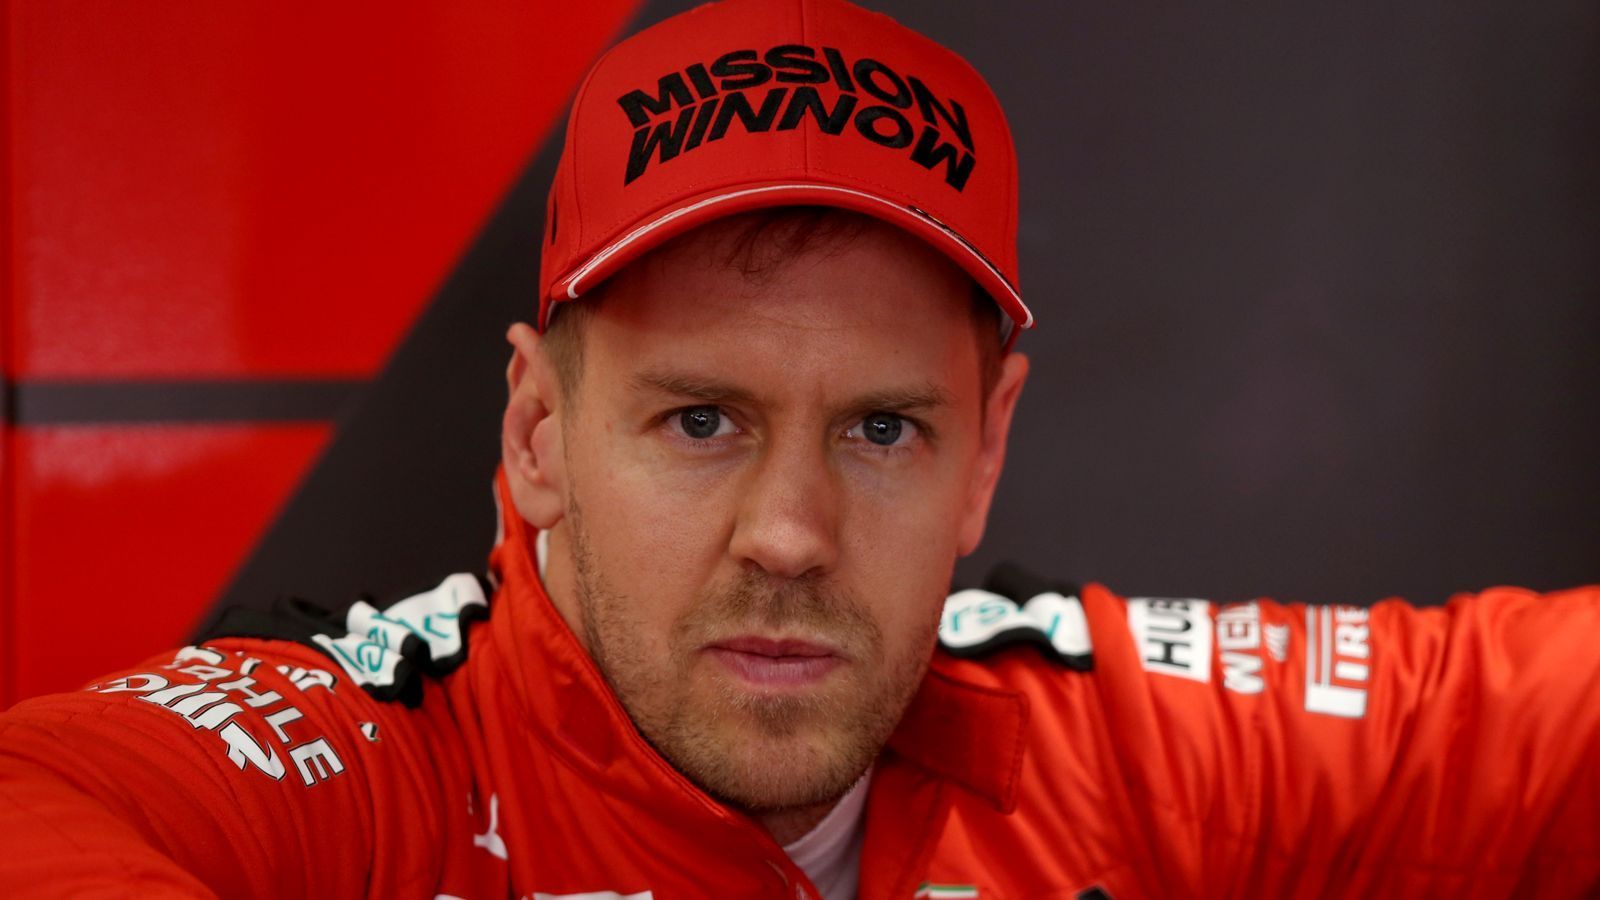 
                <strong>Verlierer: Sebastian Vettel</strong><br>
                Verliert Ferrari, verliert auch Vettel. Der Deutsche geht in sein letztes Vertragsjahr, es wird ein entscheidendes Jahr. Der Start misslang schon mal. Er macht auf optimistisch: "Wir stehen noch ganz am Anfang. Wir wussten genau, in welchen Bereichen wir zulegen wollten, da sehe ich uns auf Kurs. Es liegt an uns zu bestätigen, dass wir unsere Lehren aus der Saison 2019 gezogen haben." Wie brisant und bisweilen bizarr die Situation um Vettel und seinen Teamkollegen Charles Leclerc ist, bewies ein Ex-F1-Pilot: Jolyon Palmer ist als TV-Experte in Barcelona. Der Engländer urteilt über die Fahrersituation bei Ferrari, nachdem Vettel am ersten Tag krank im Hotelzimmer lag und die Reihenfolge bei Ferarri geändert wurde: "Ich sehe Sebastian Vettel bereits in der Defensive. Denn er konnte am ersten Testtag nicht fahren, stattdessen begann Charles Leclerc mit der Testarbeit." 
              